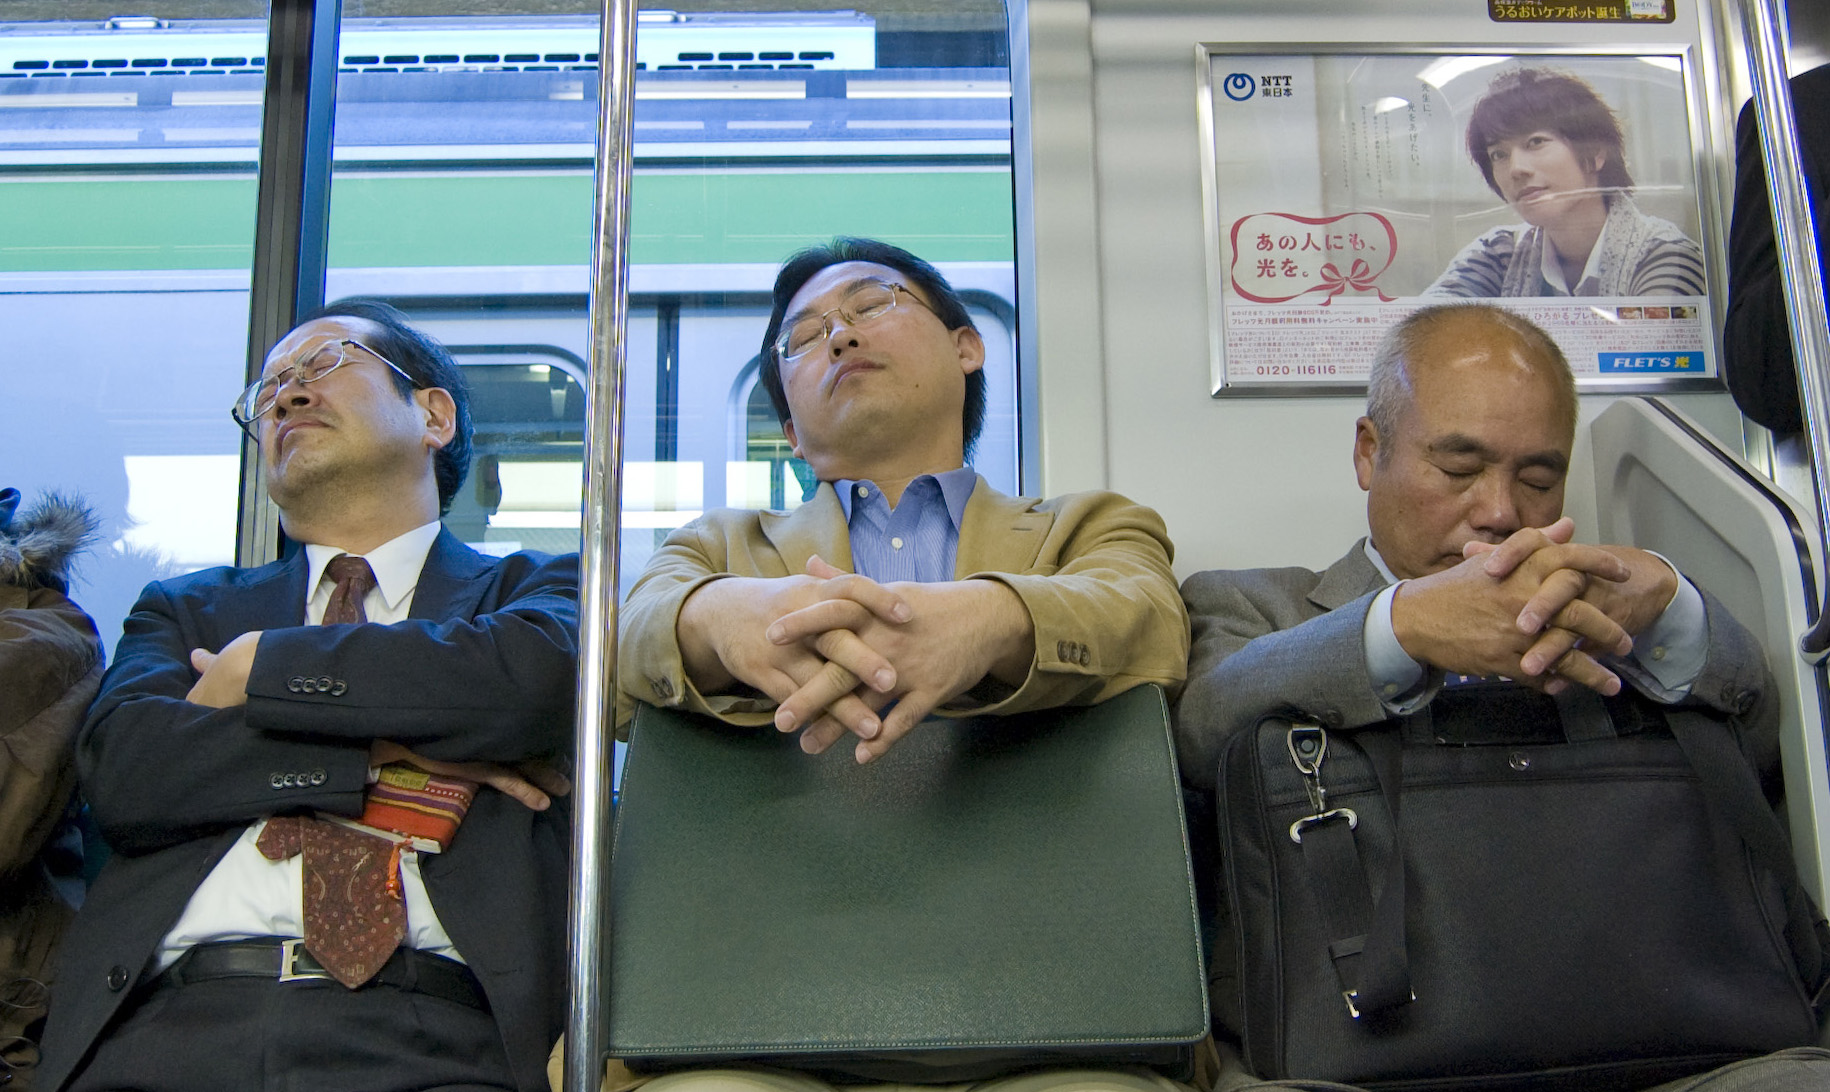 People sleeping in train, Japan